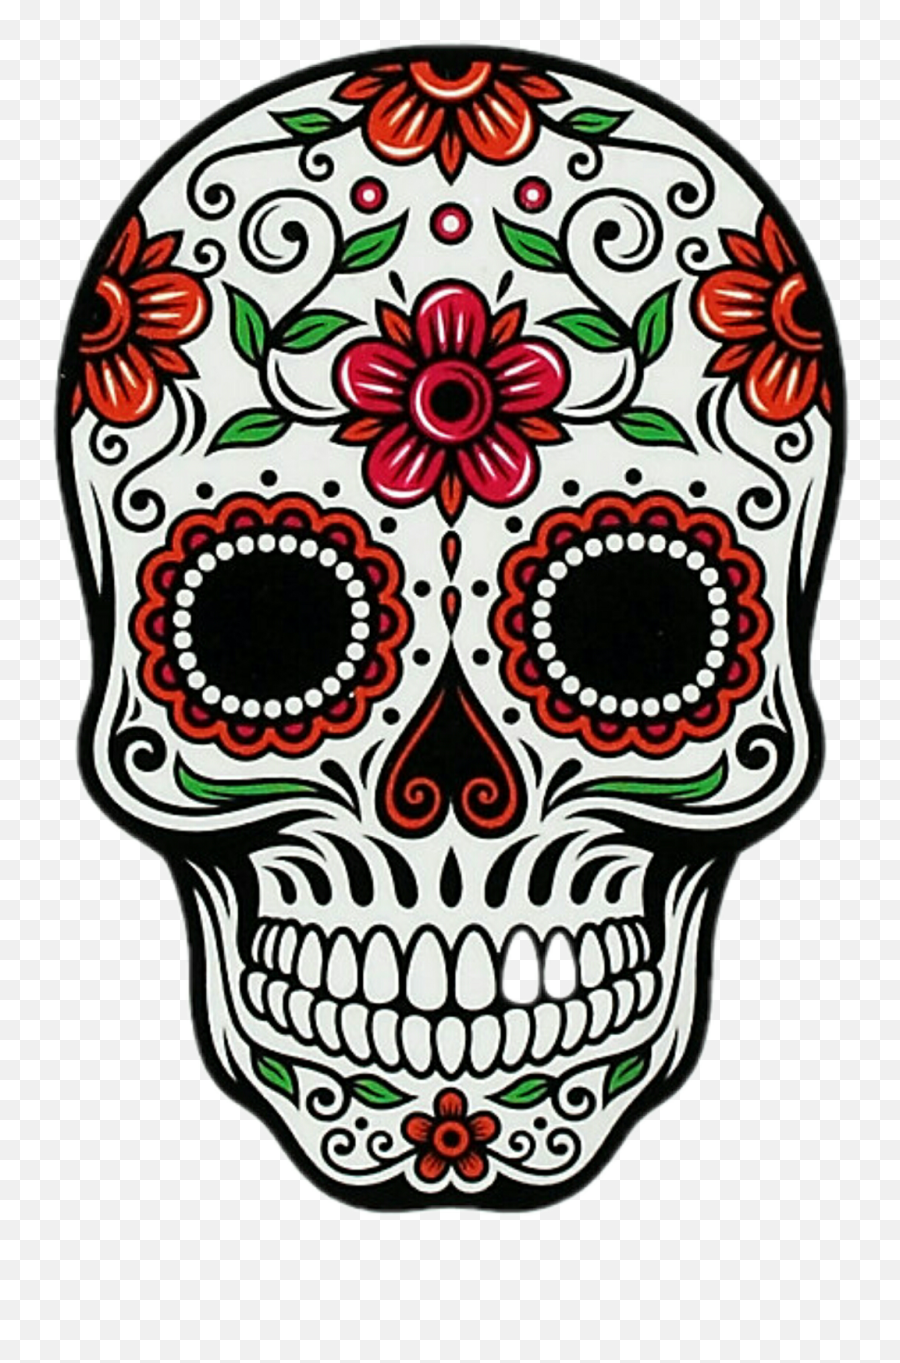 Skull - Mexican Day Of The Dead Skull Png,Skull Emoji Transparent